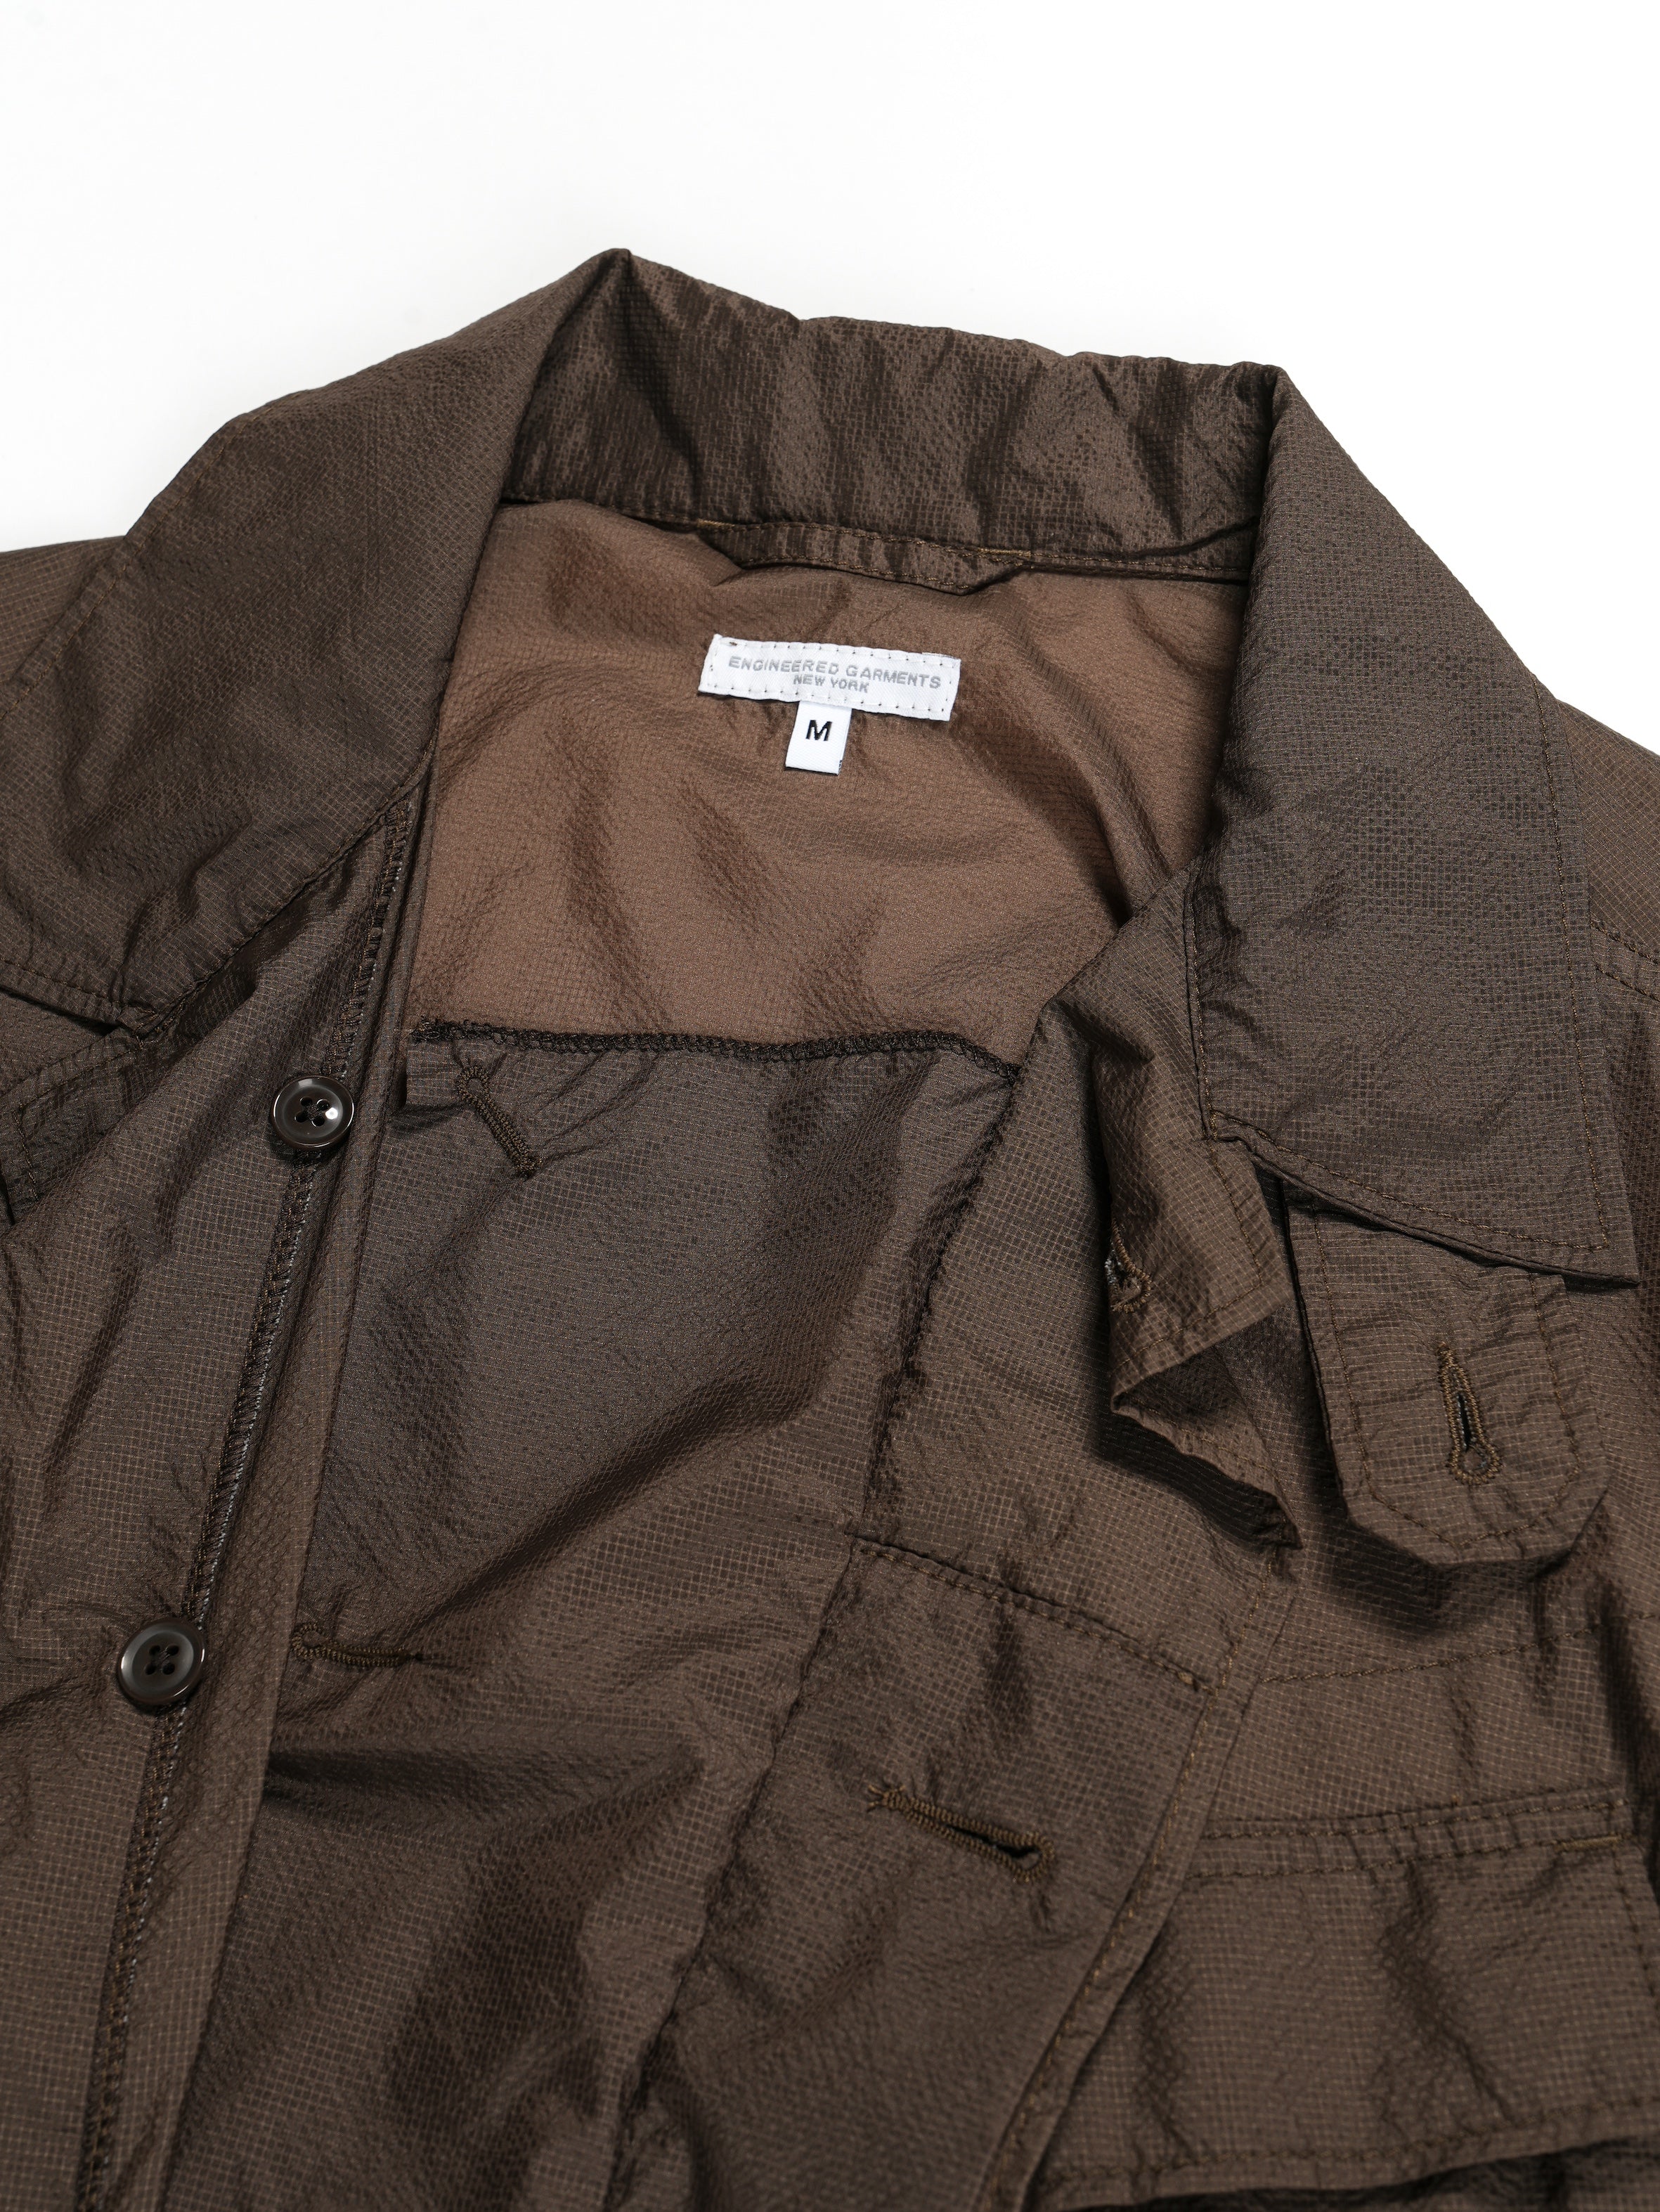 Engineered Garments BDU Jacket - Dk.Brown Nylon Micro Ripstop